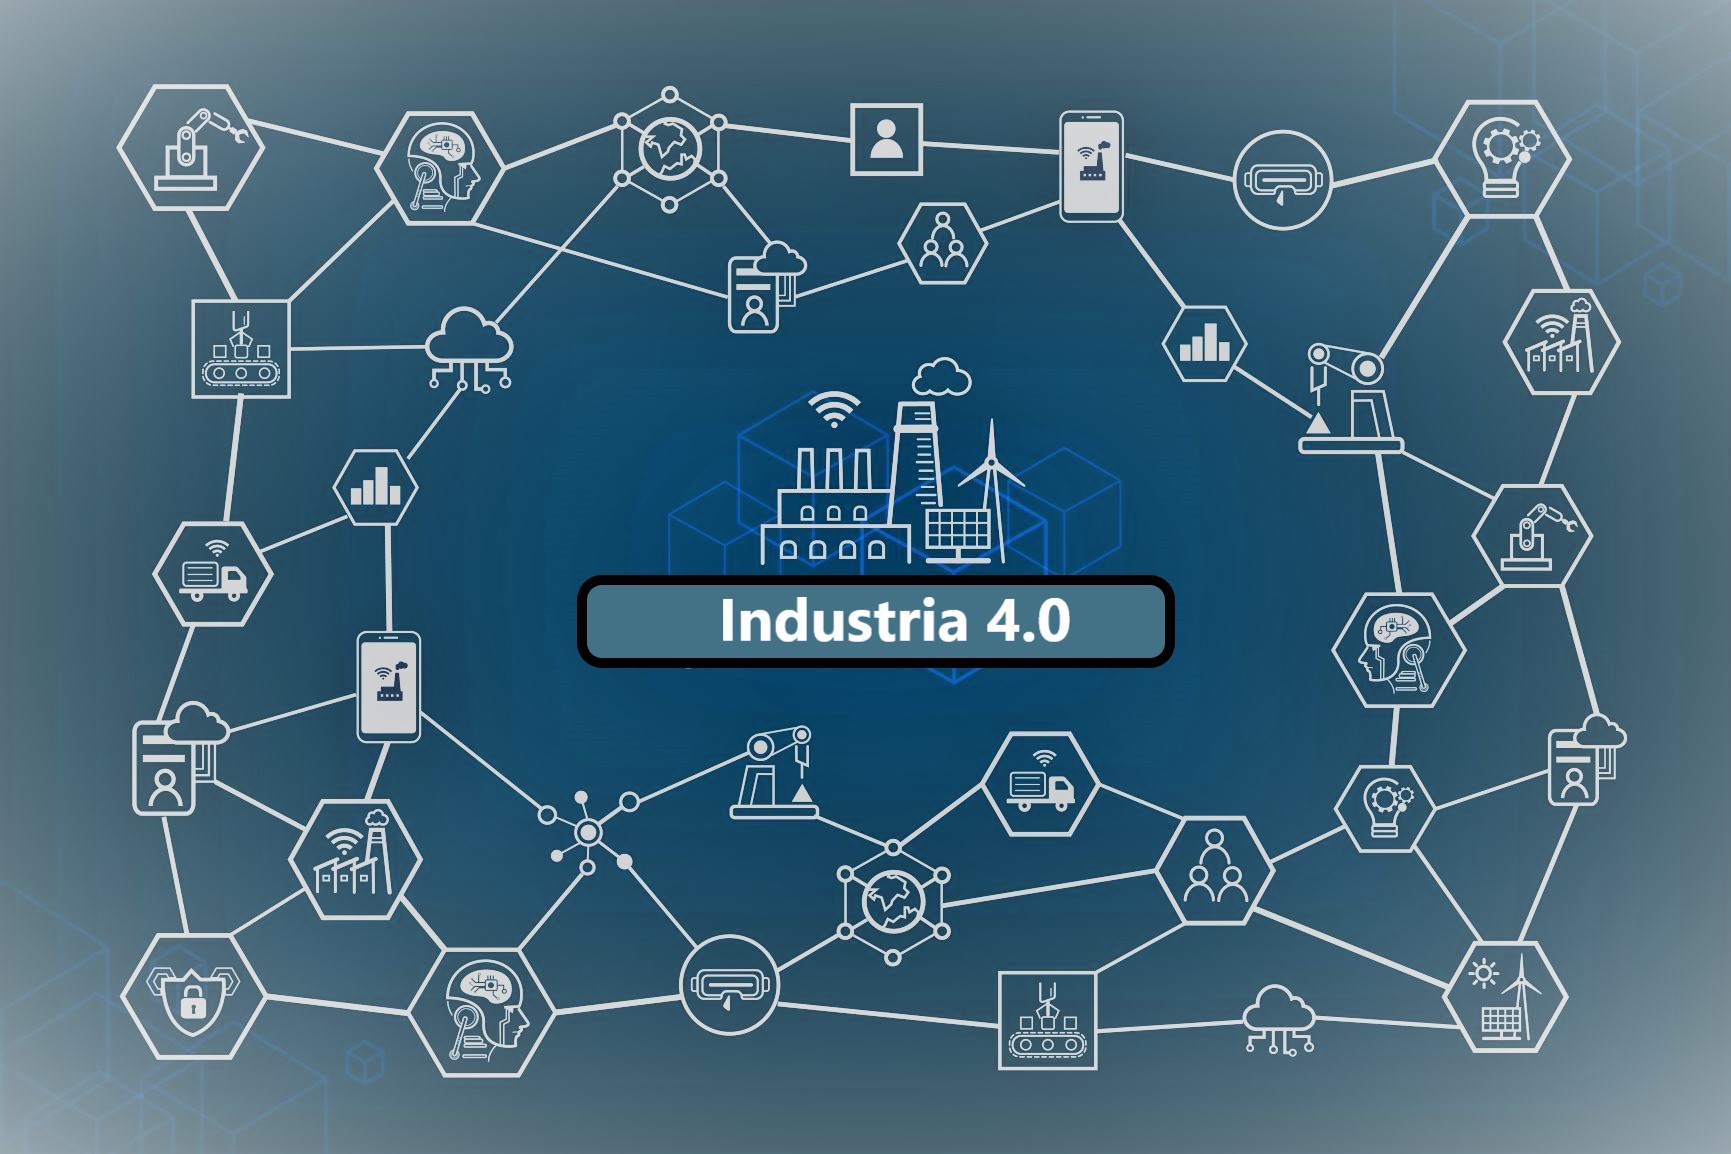 industria-4.0